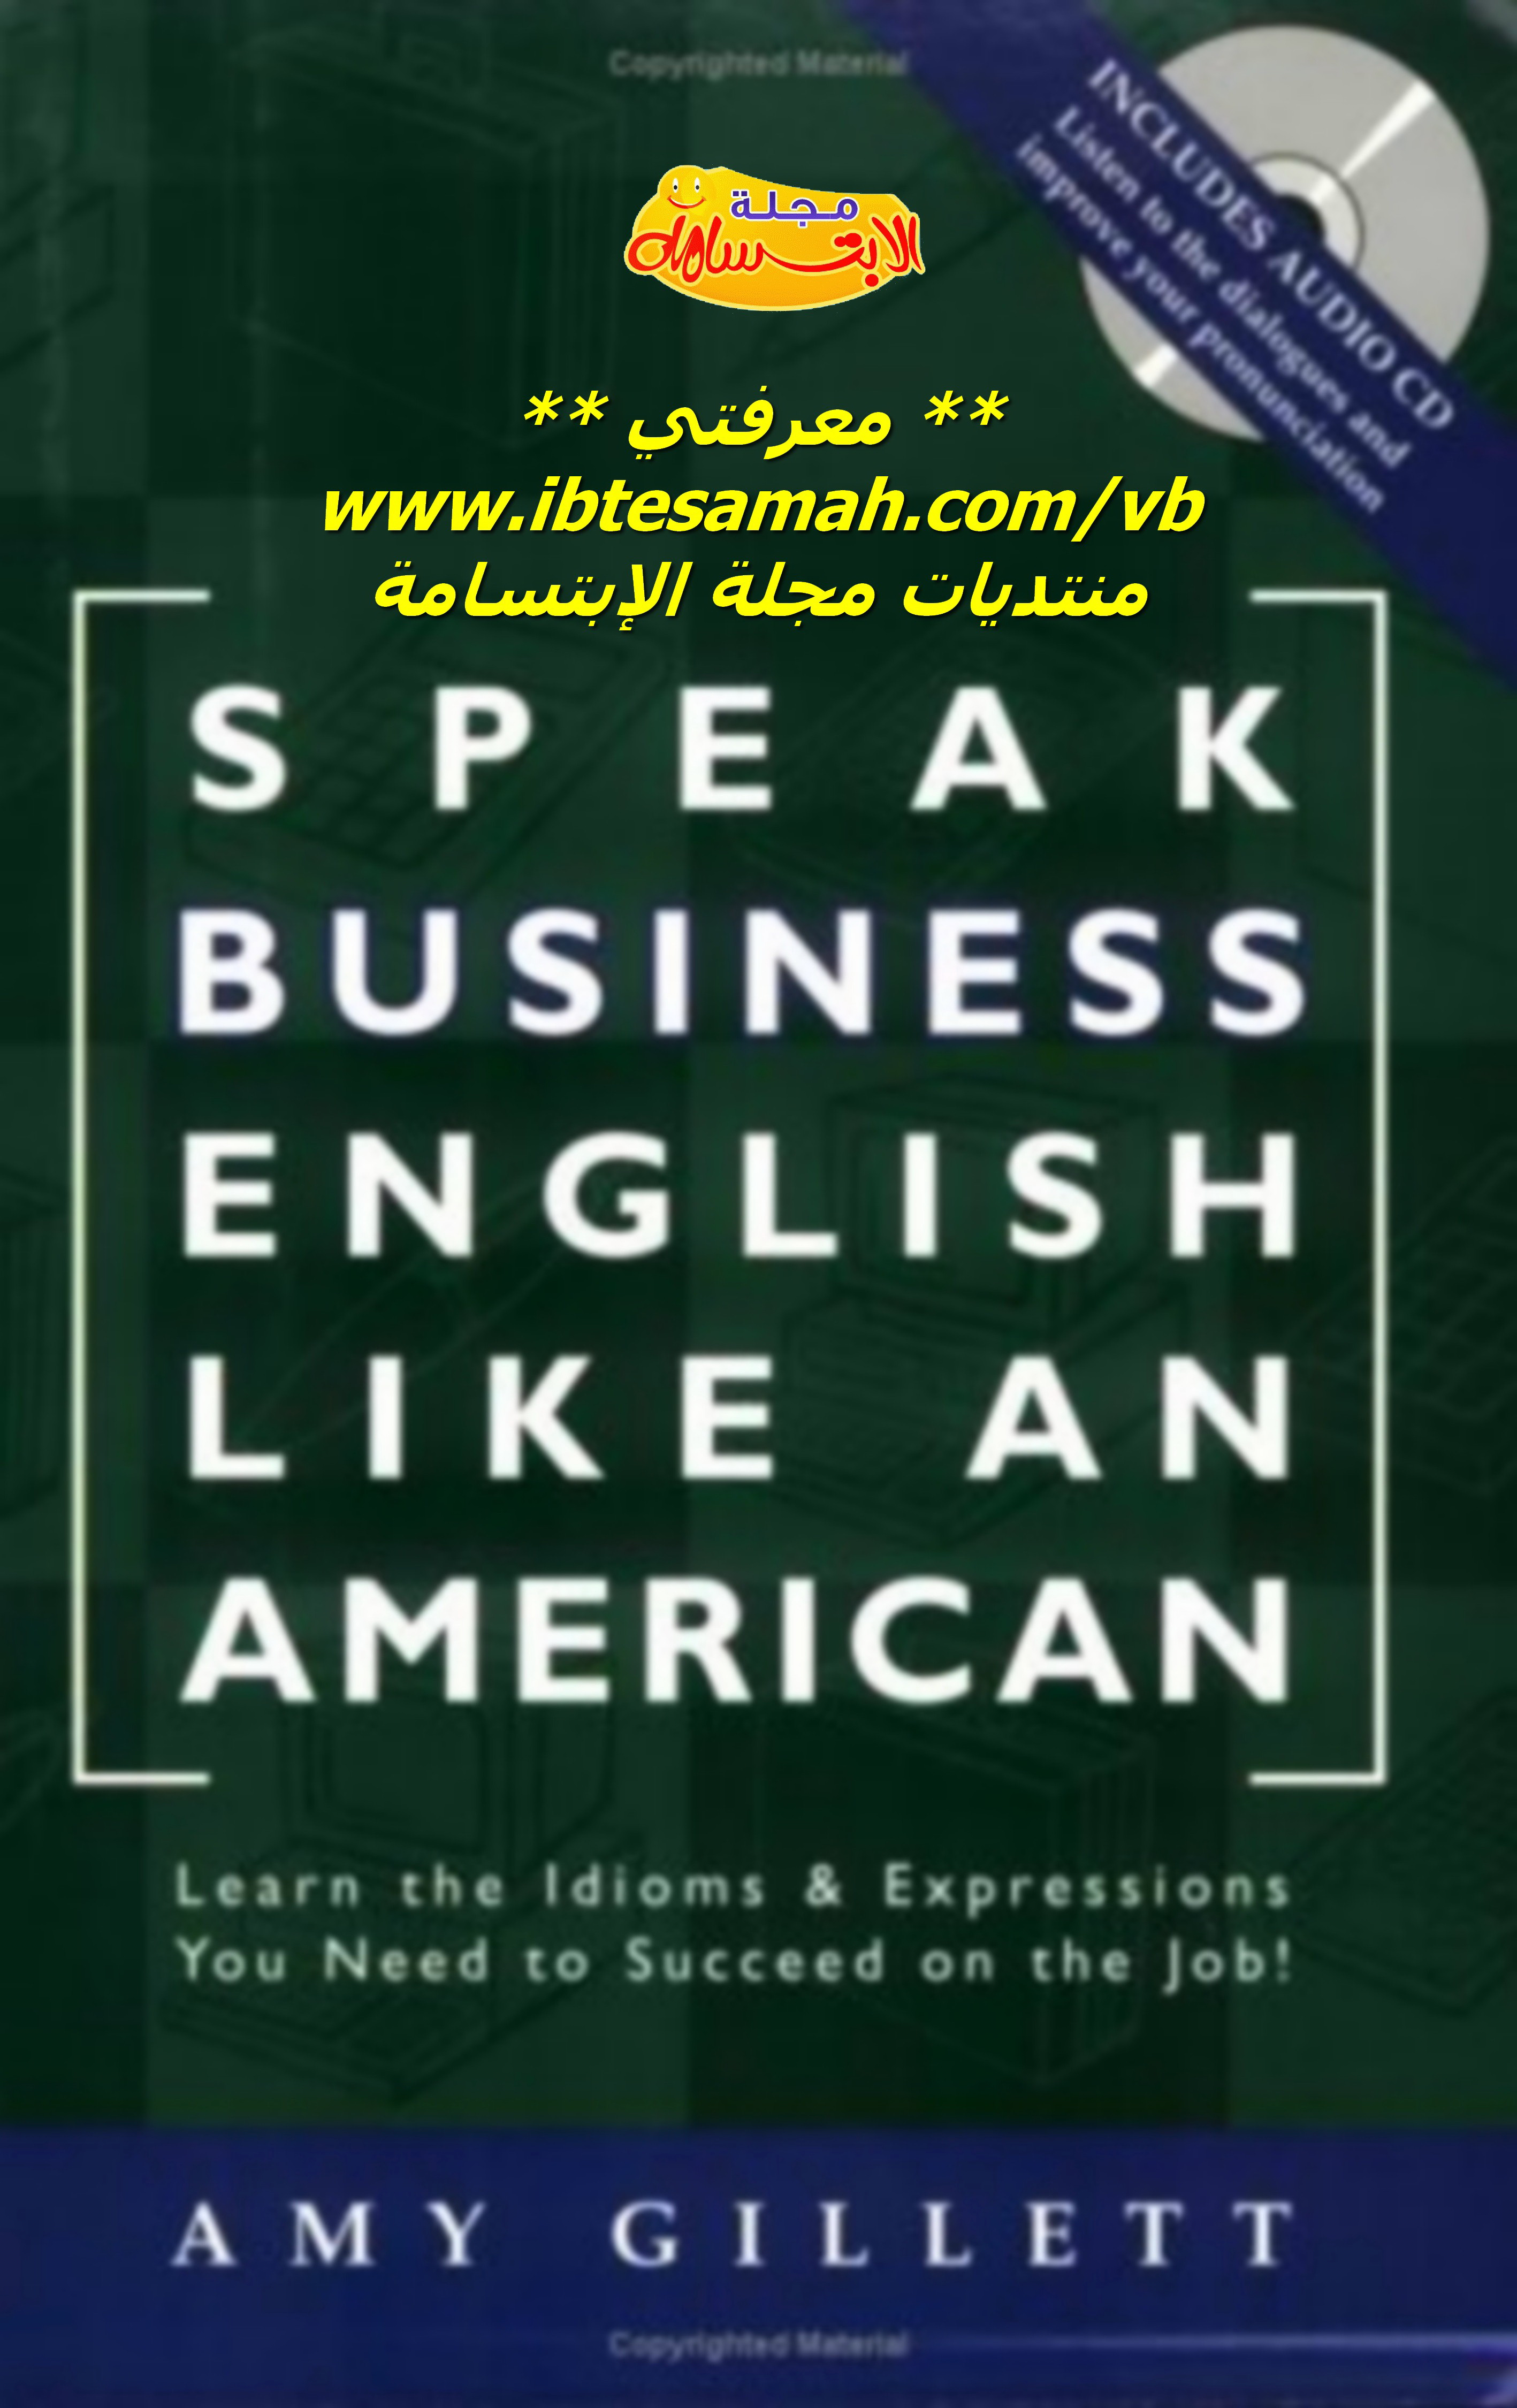 pdf business english speaking